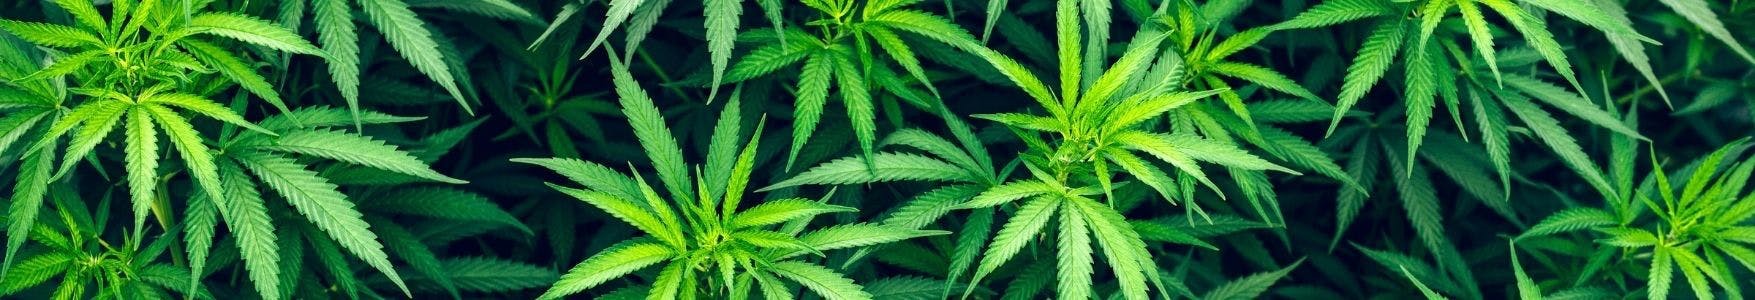 code de réduction pour les graines de cannabis